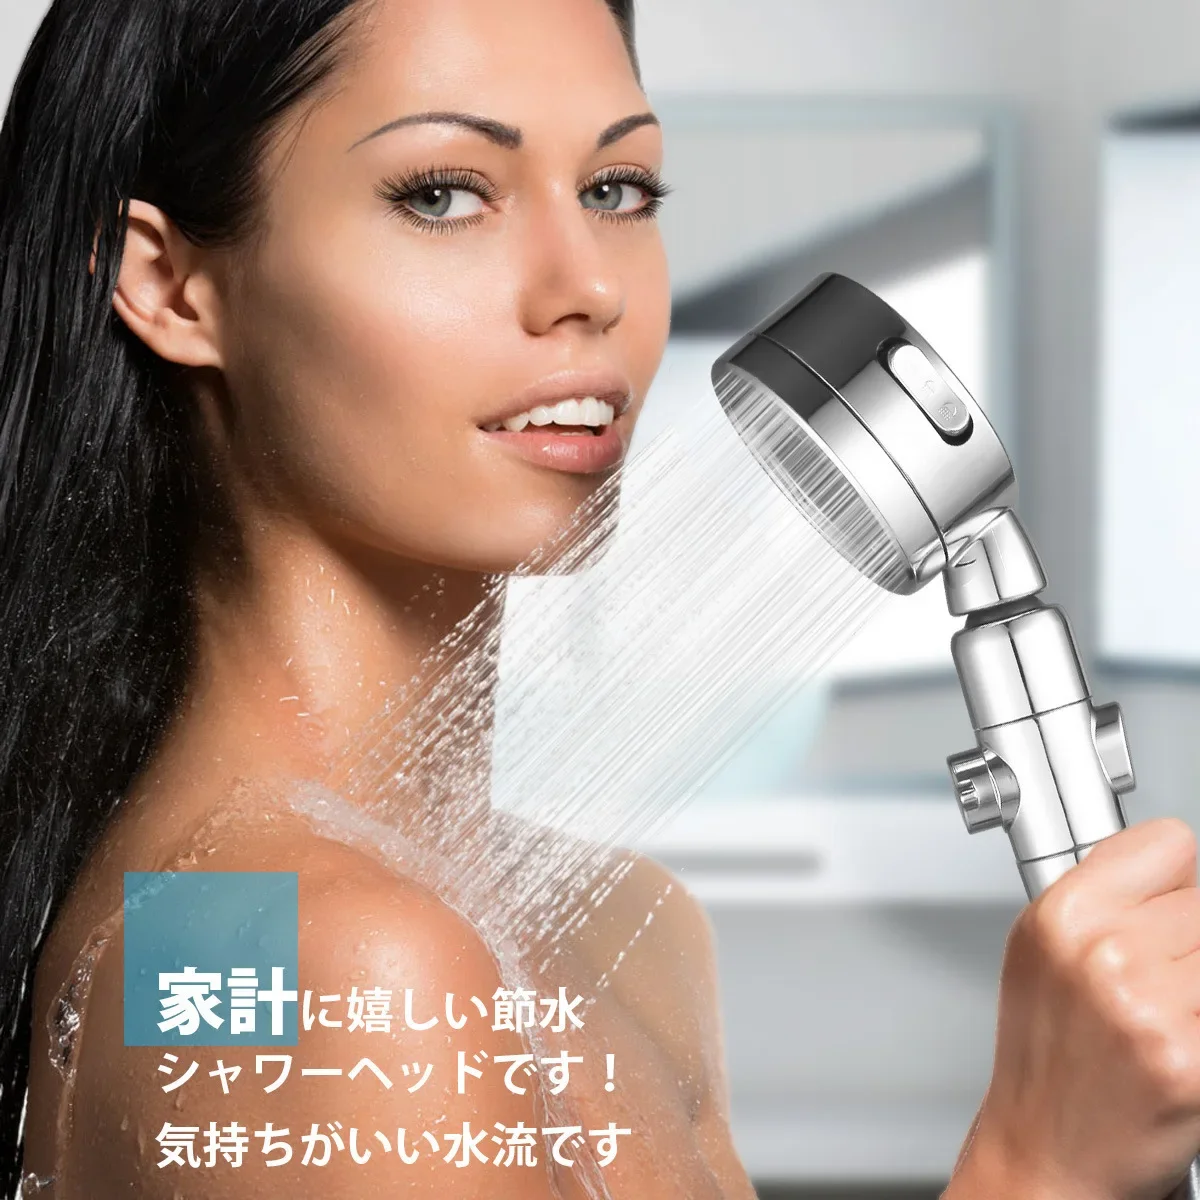 

Душевая лейка в японском стиле, вращающаяся головка, три скорости, фильтр для останова воды одним нажатием, хлопковая насадка, аксессуар